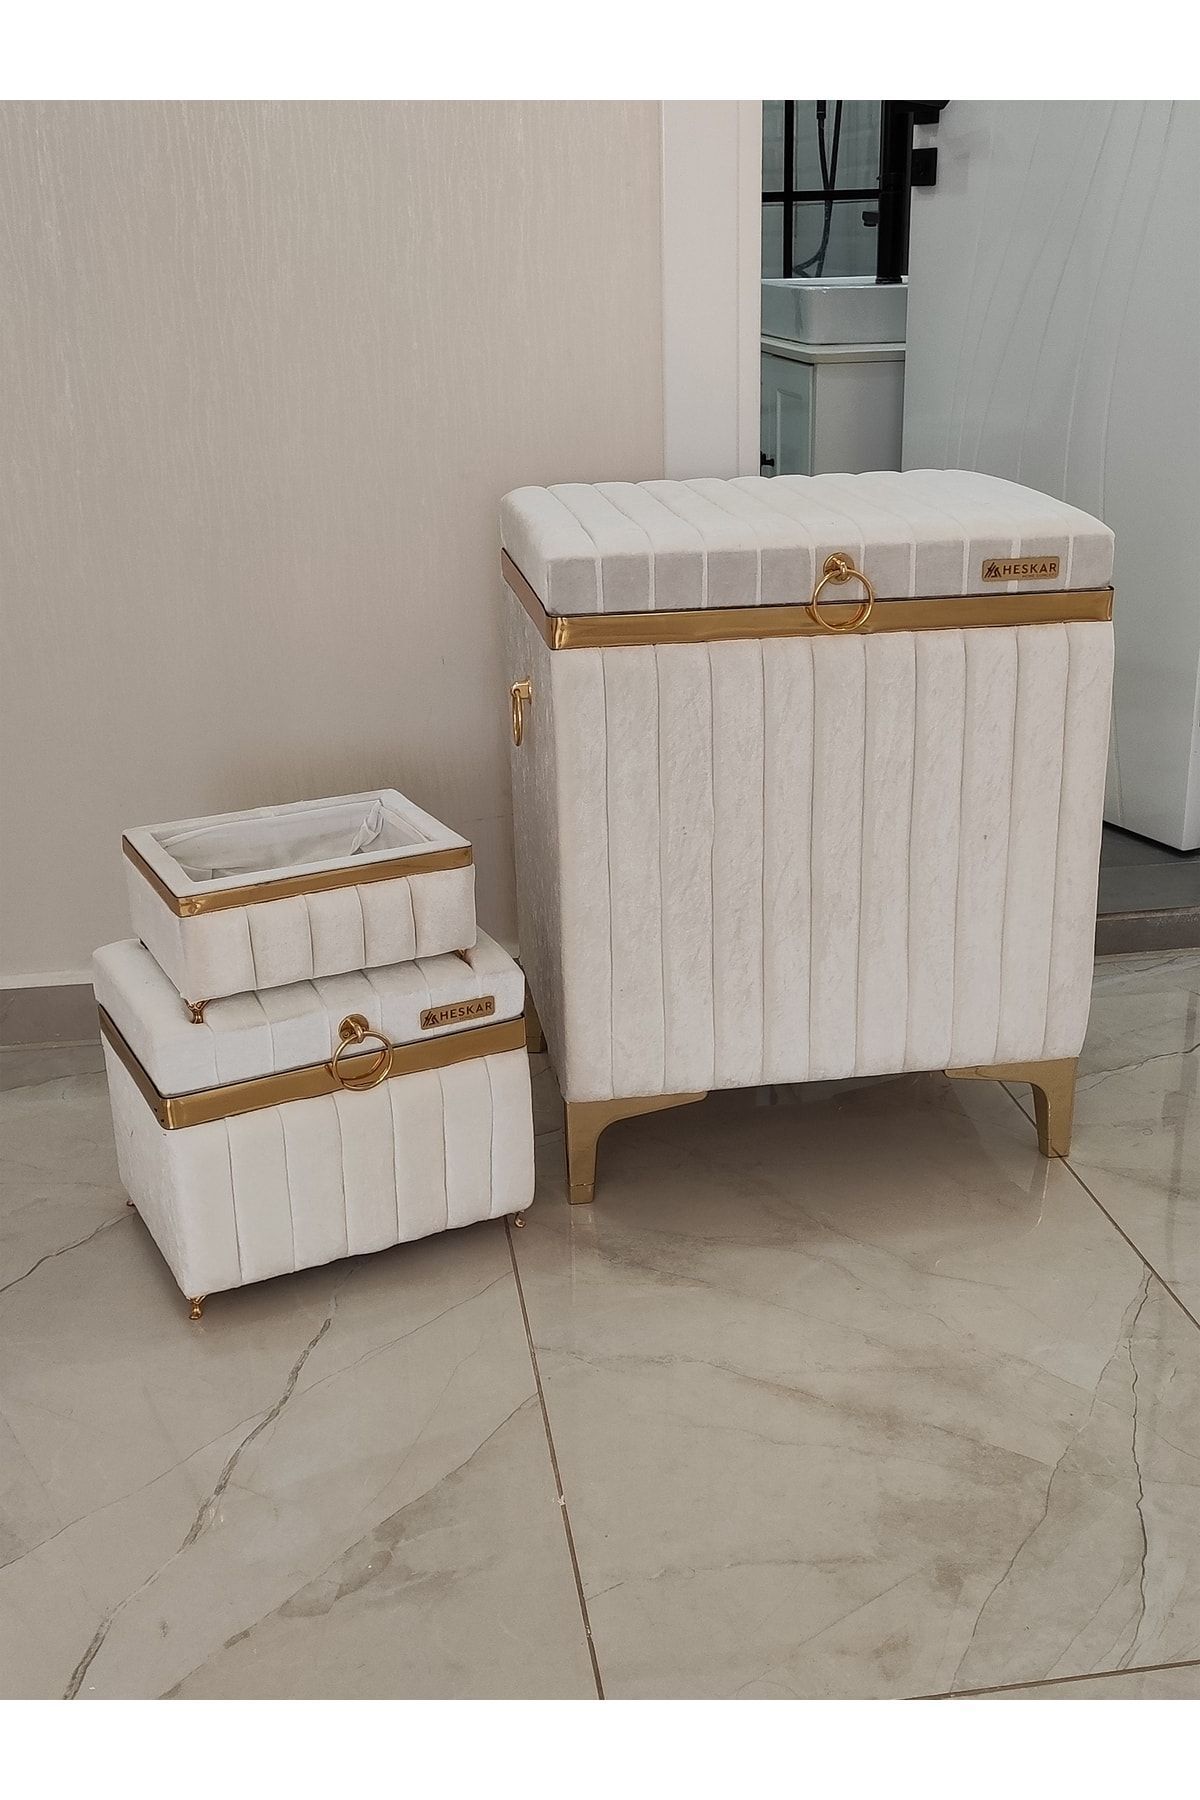 HESKAR HOME 3 Parça Dikdörtgen Krem Renk Altın Şeritli Modern Kadife Banyo Kirli Çamaşır Sepeti